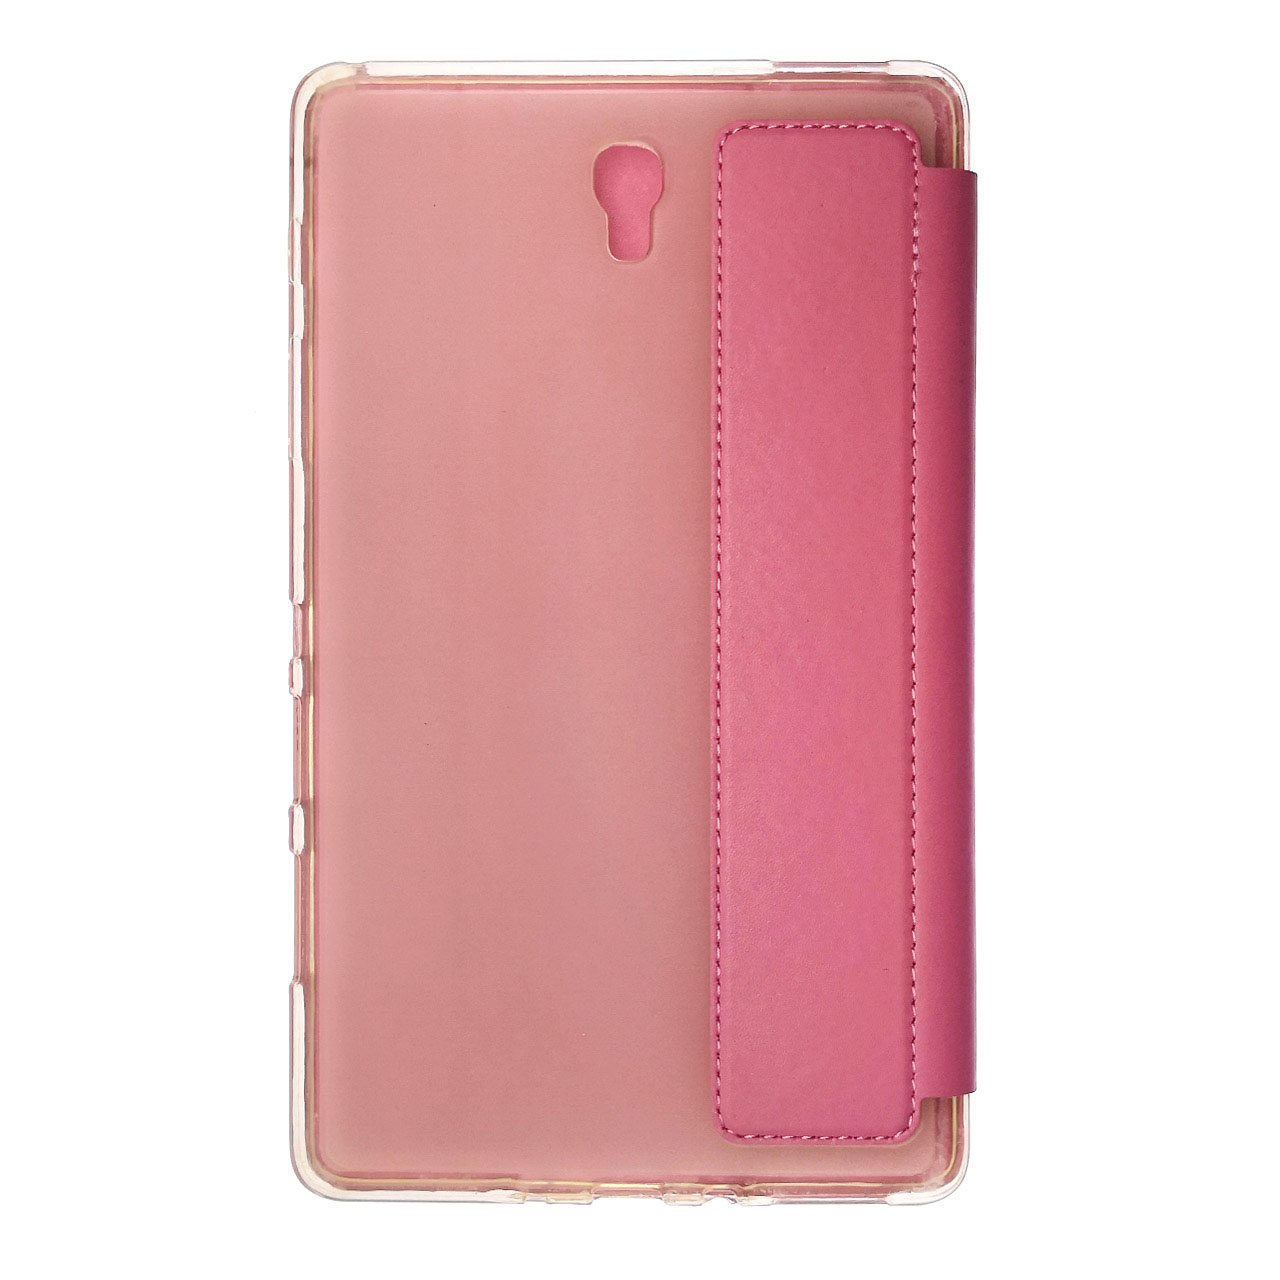 Чехол книжка Smart Case для SAMSUNG Galaxy Tab S 8.4 (SM-T700), экокожа, цвет розовый.